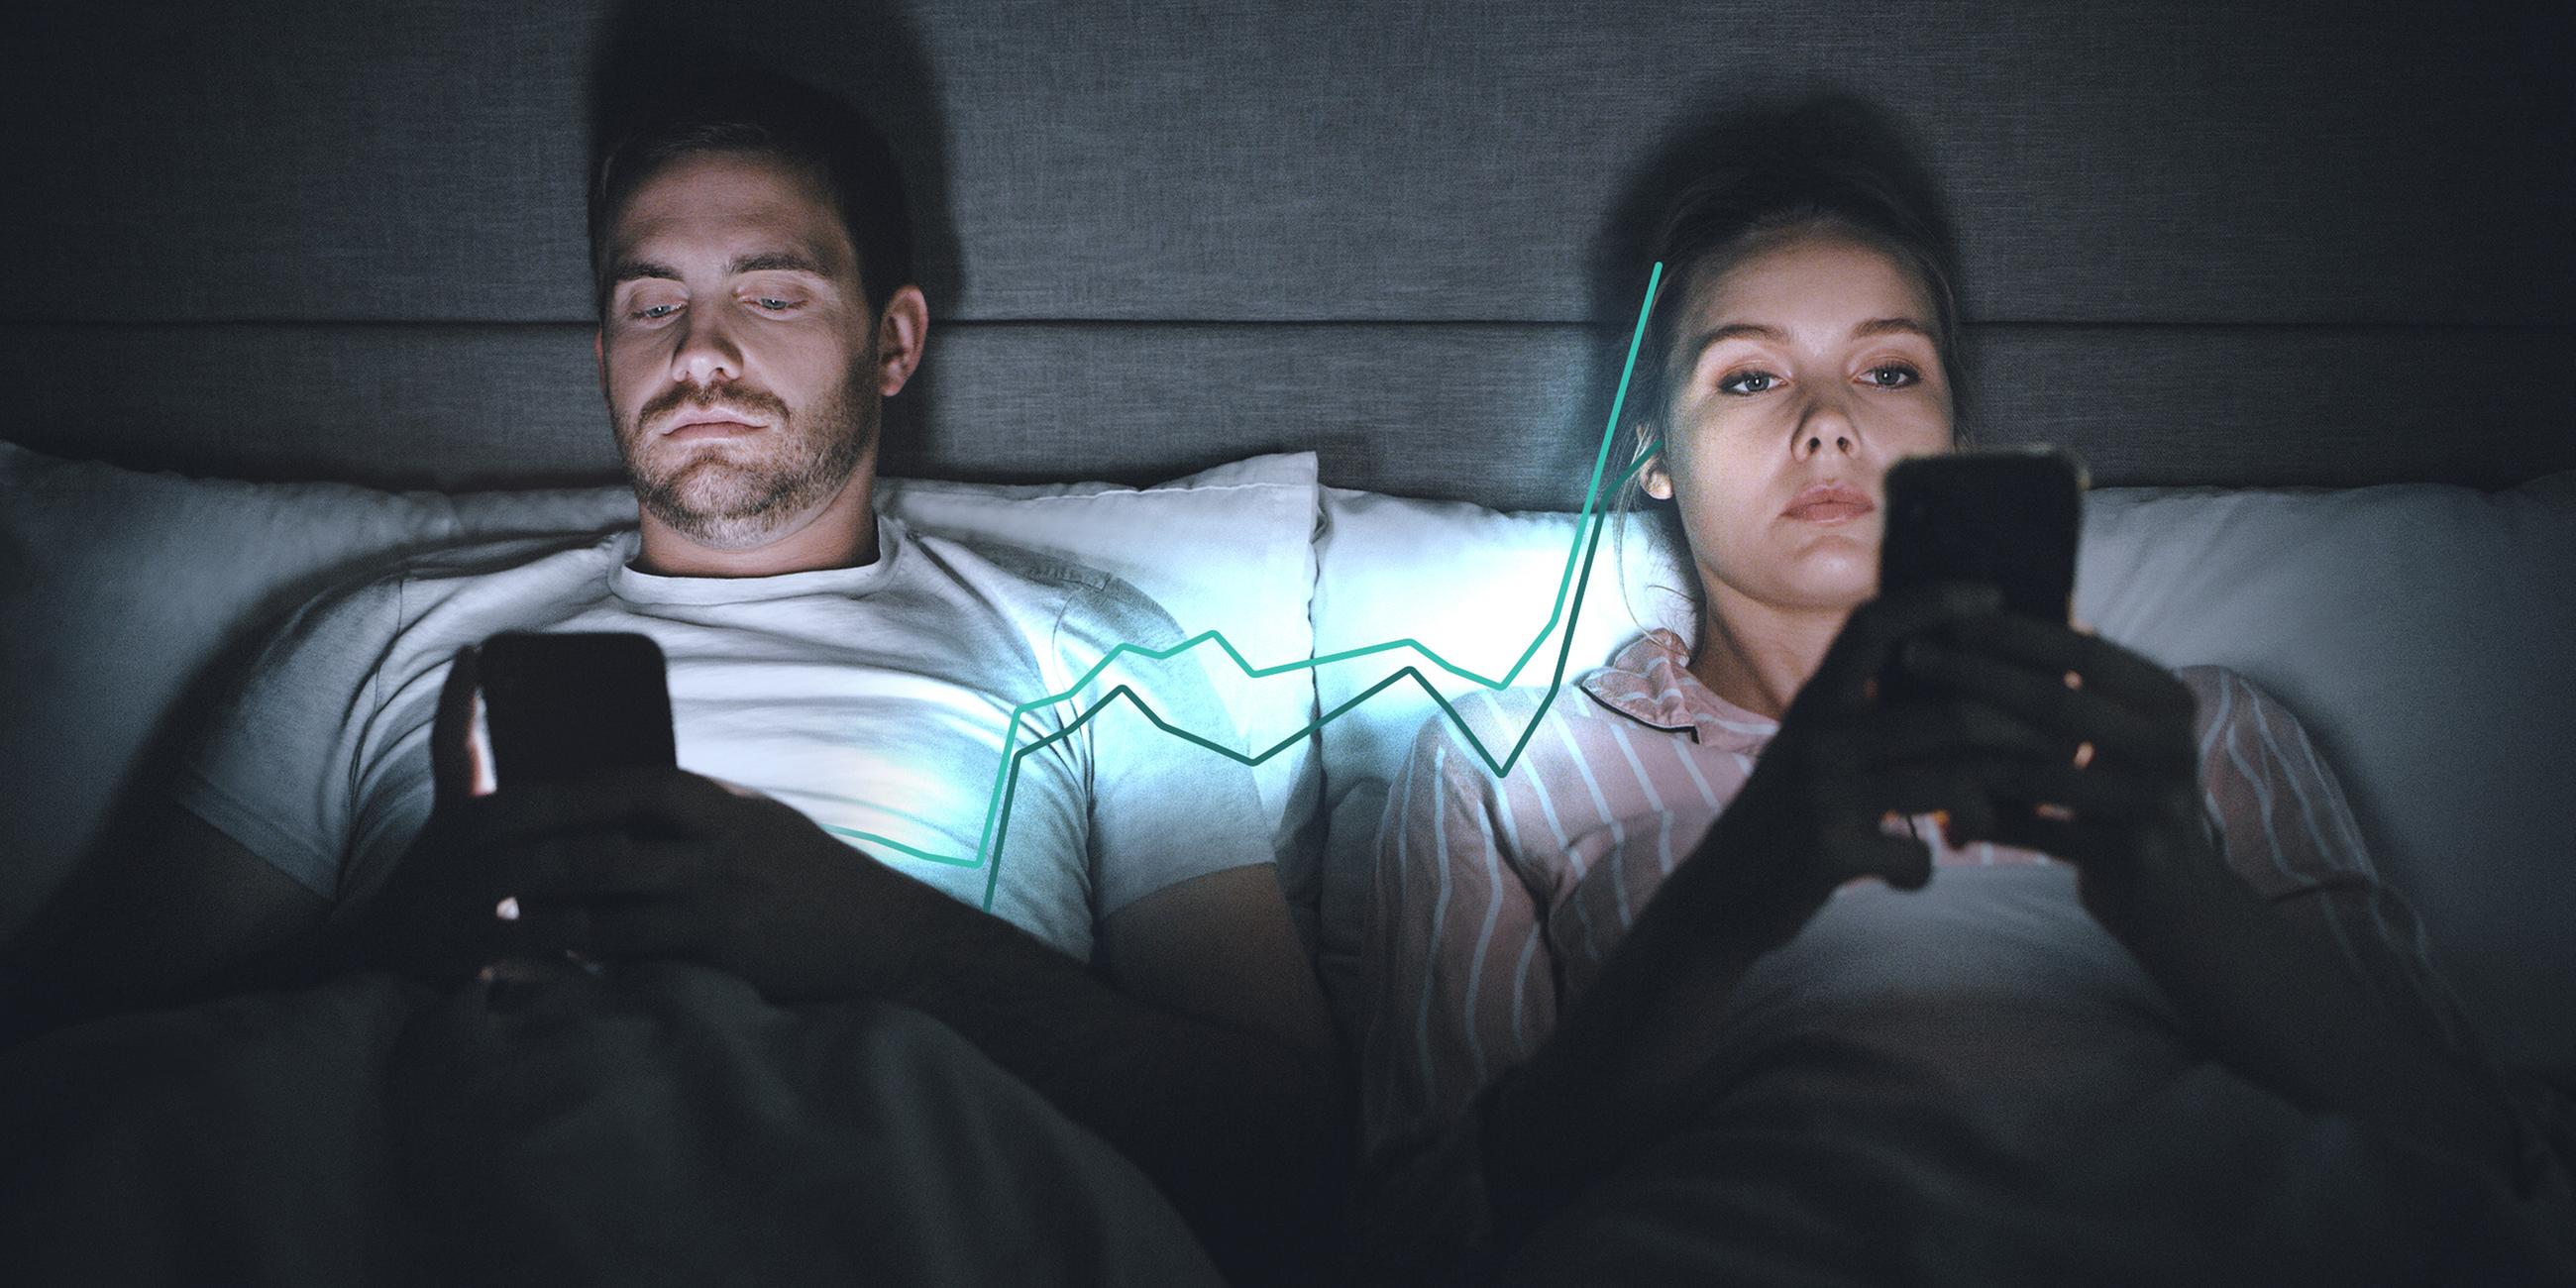 Junger Mann und junge Frau liegen mit Handy im Bett. Dazu eine Kurve, die für unterschiedliche Wahlentscheidungen von Frauen und Männern steht